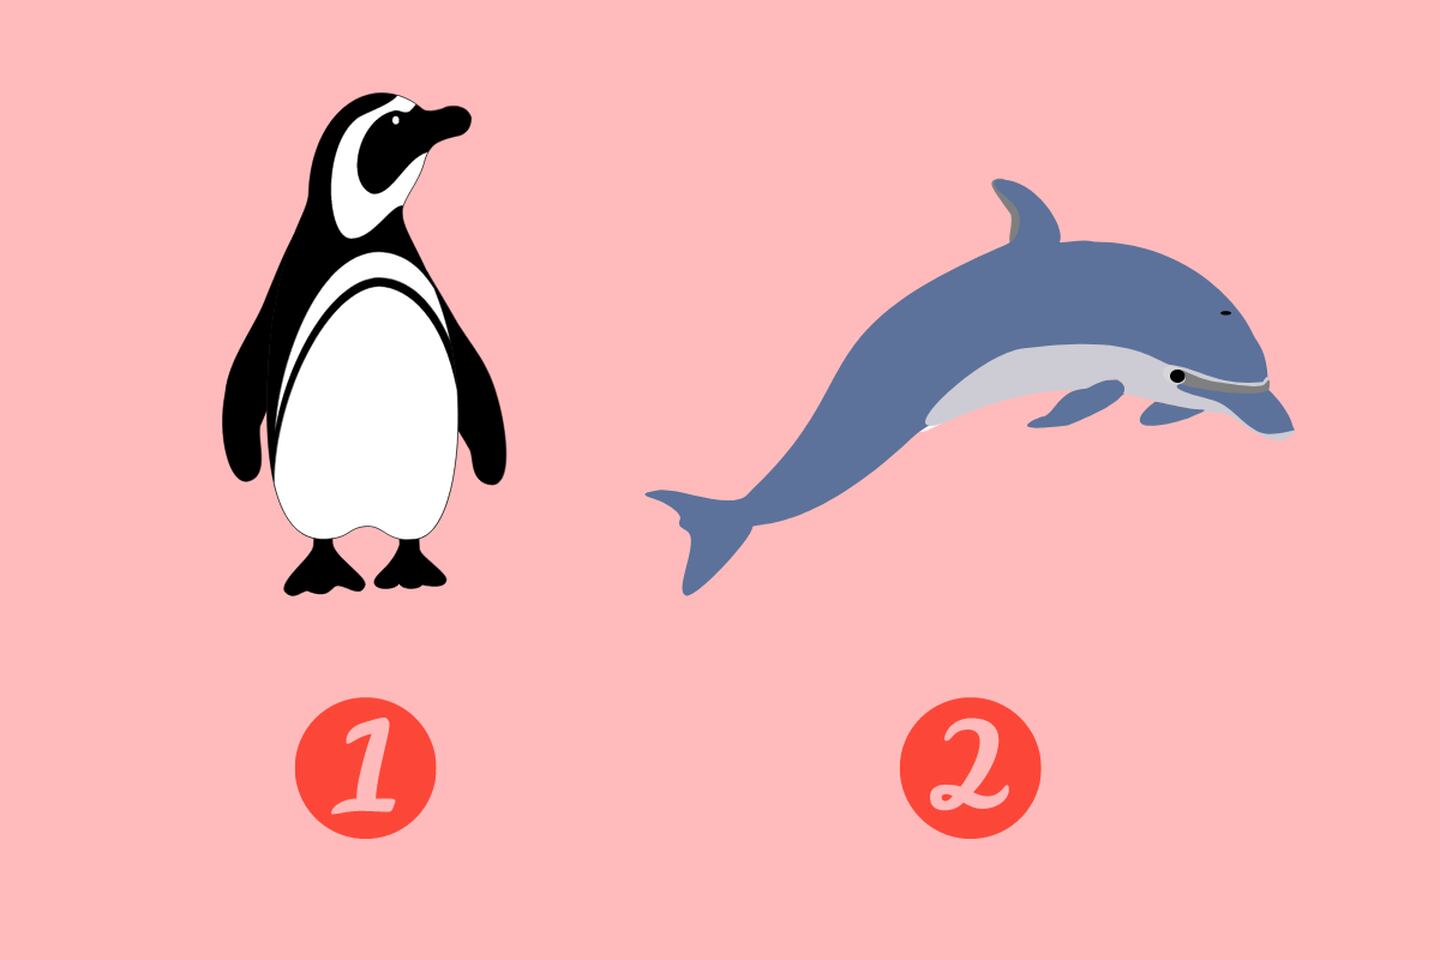 En este test de personalidad hay dos opciones, primero un pingüino y segundo un delfín, el cual definirá qué tan fiel eres.